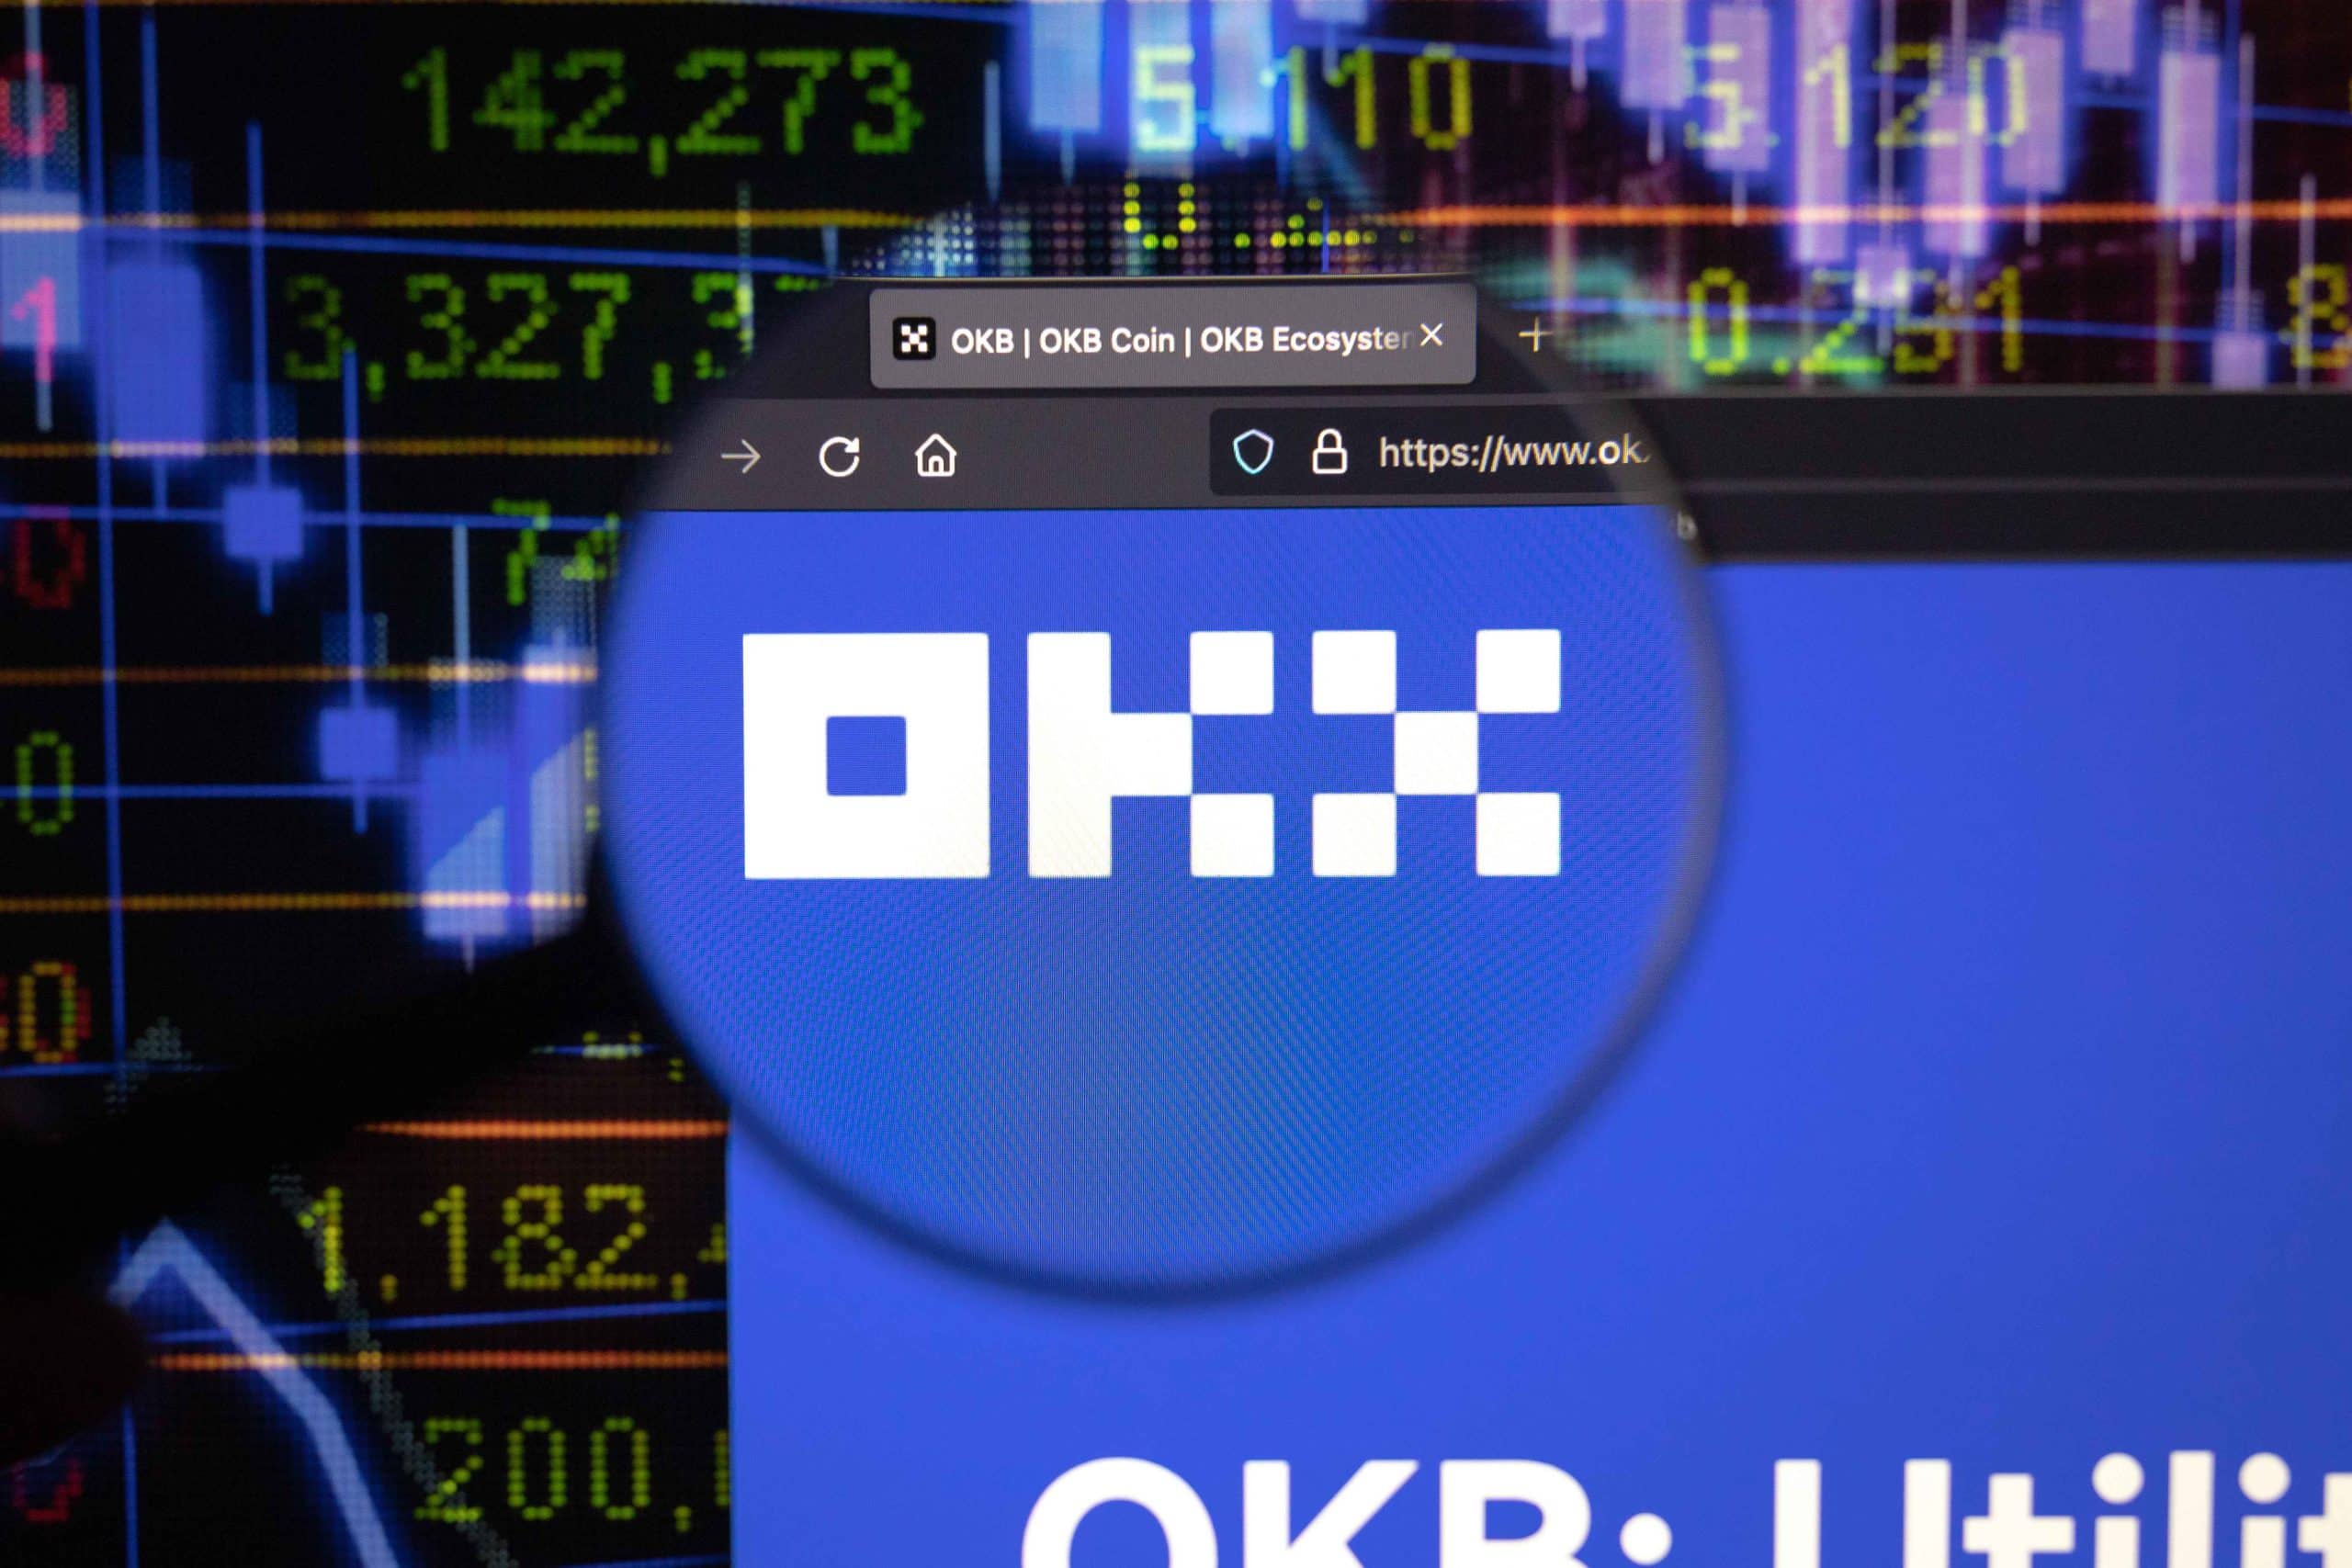 OKB price crashed